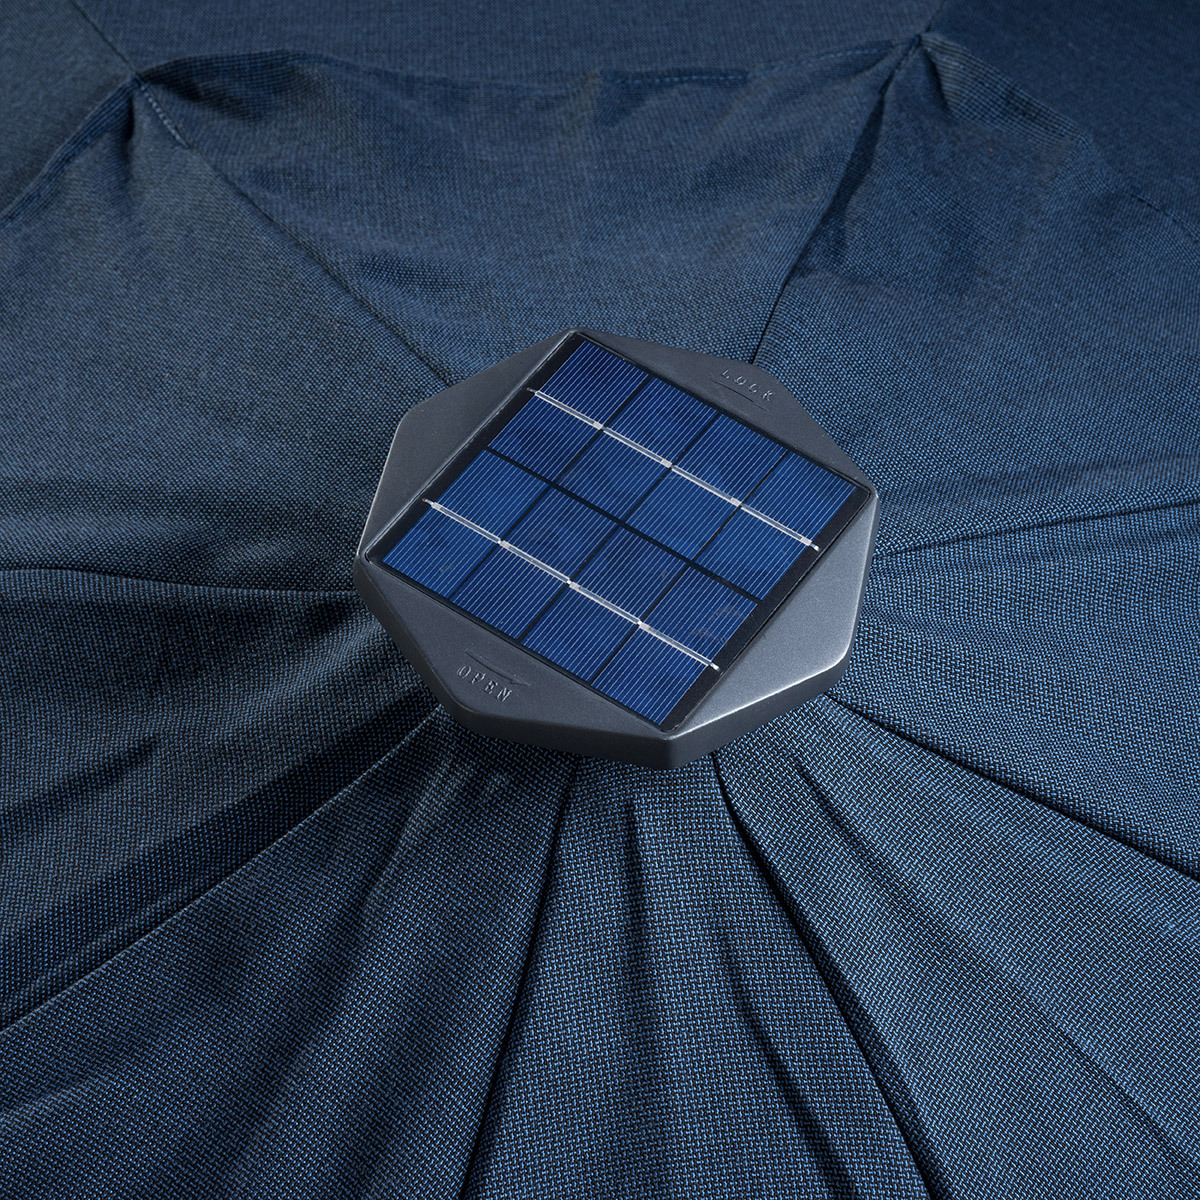 선빌라 LED 조명 우산, 지름 3.0m - 블루